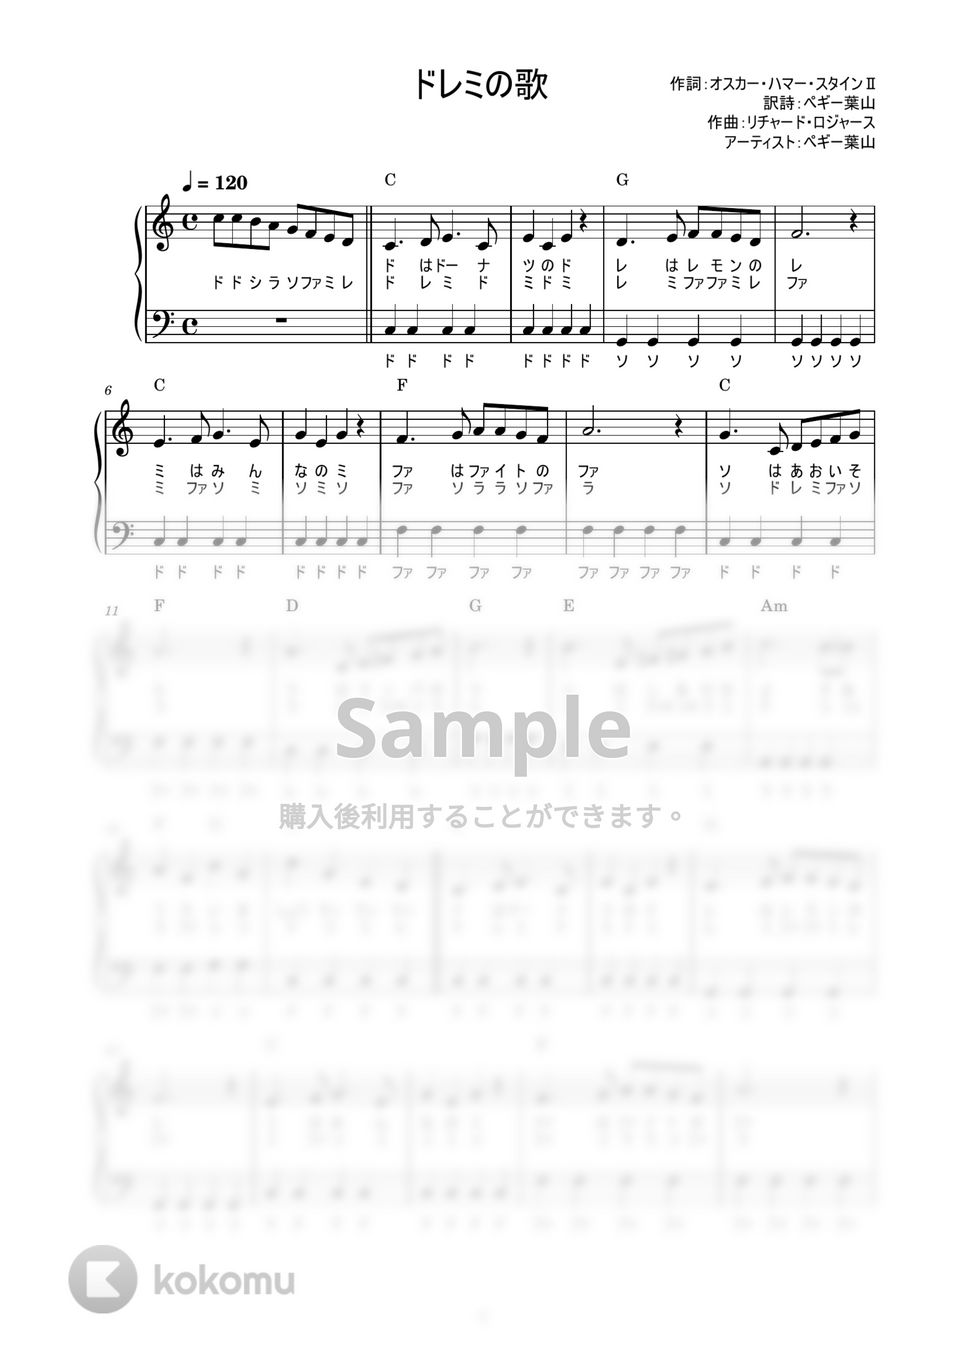 ペギー葉山 - ドレミの歌 (かんたん / 歌詞付き / ドレミ付き / 初心者) by piano.tokyo